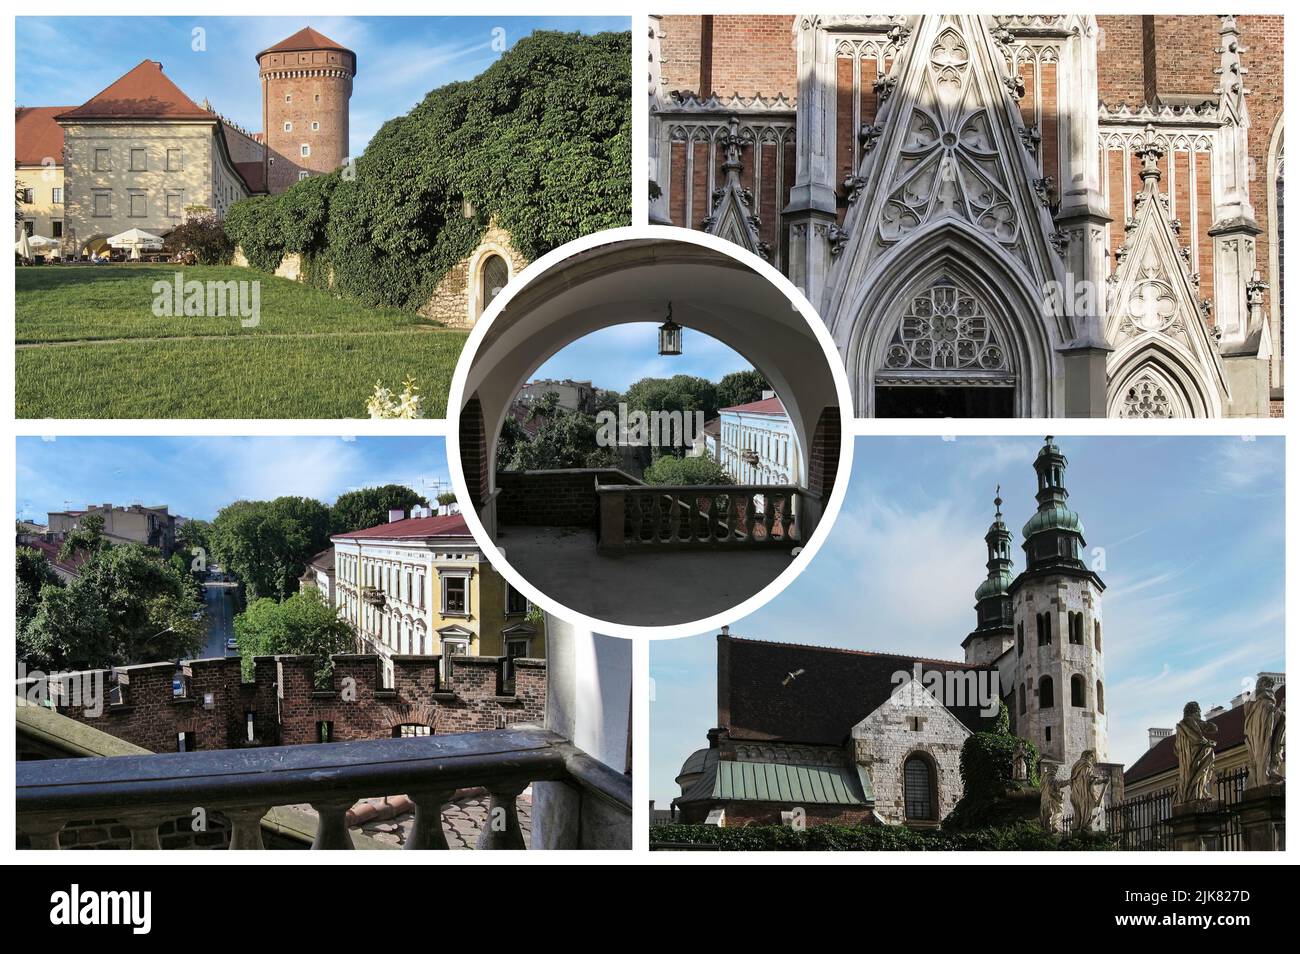 Cracovie en Pologne est l'une des plus anciennes villes du pays. Ancienne résidence des rois, elle est considérée comme la capitale de la culture polonaise Banque D'Images